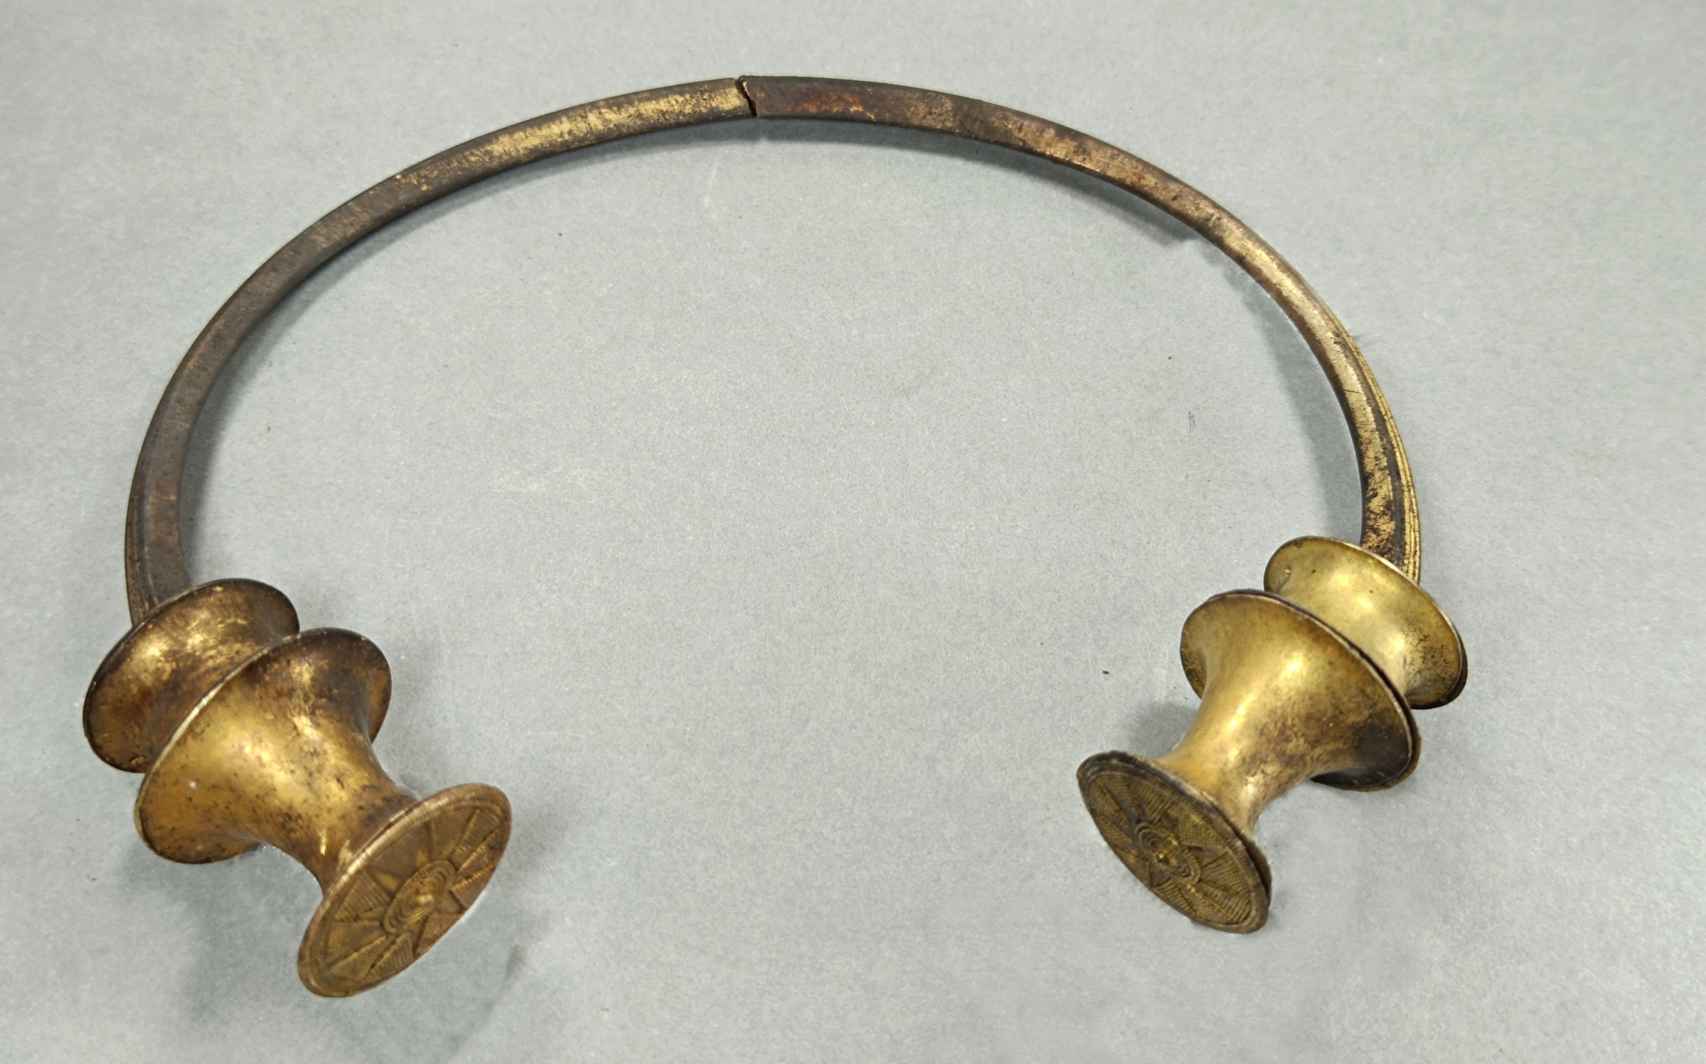 Un operario municipal encuentra en Asturias dos collares de oro de hace 2.500 años 793680725_235947129_1706x1064